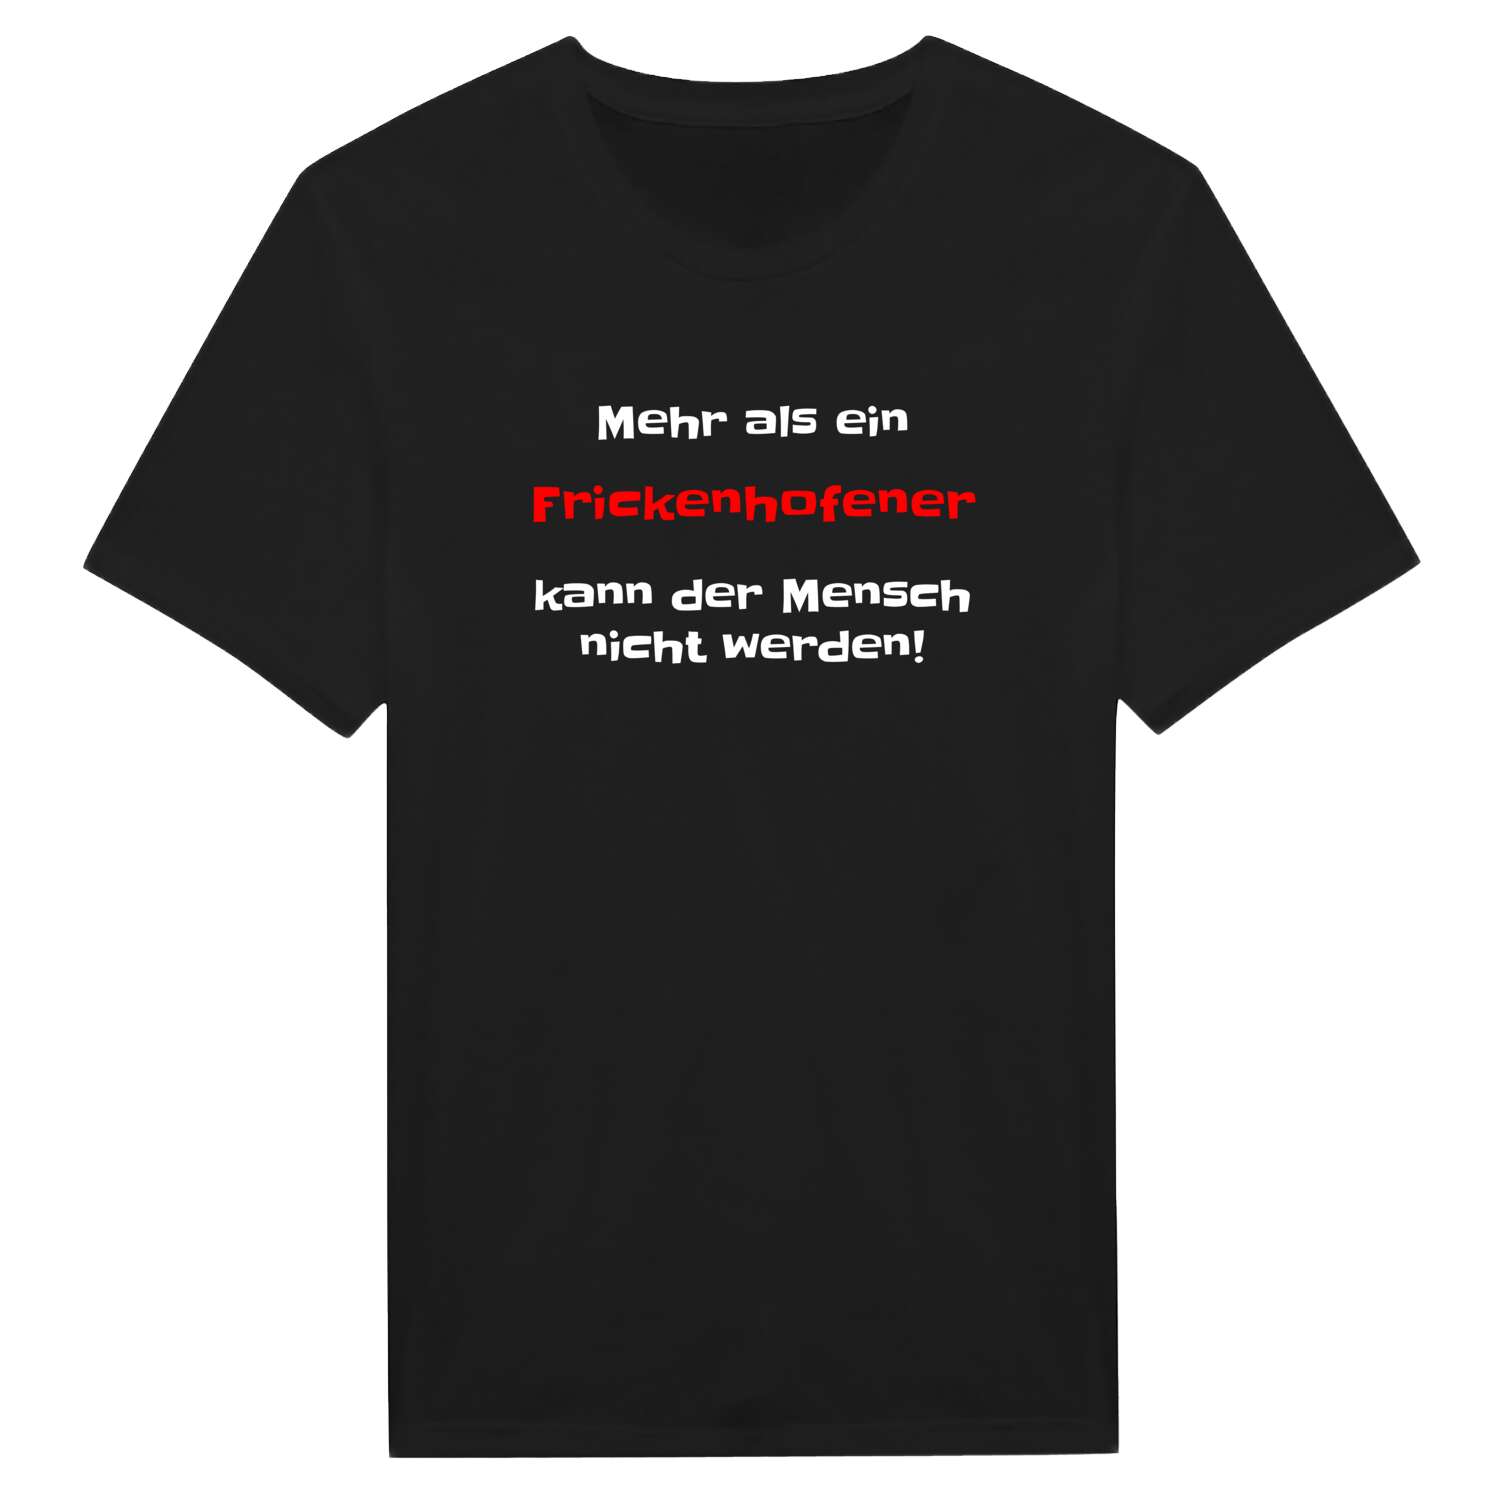 Frickenhofen T-Shirt »Mehr als ein«